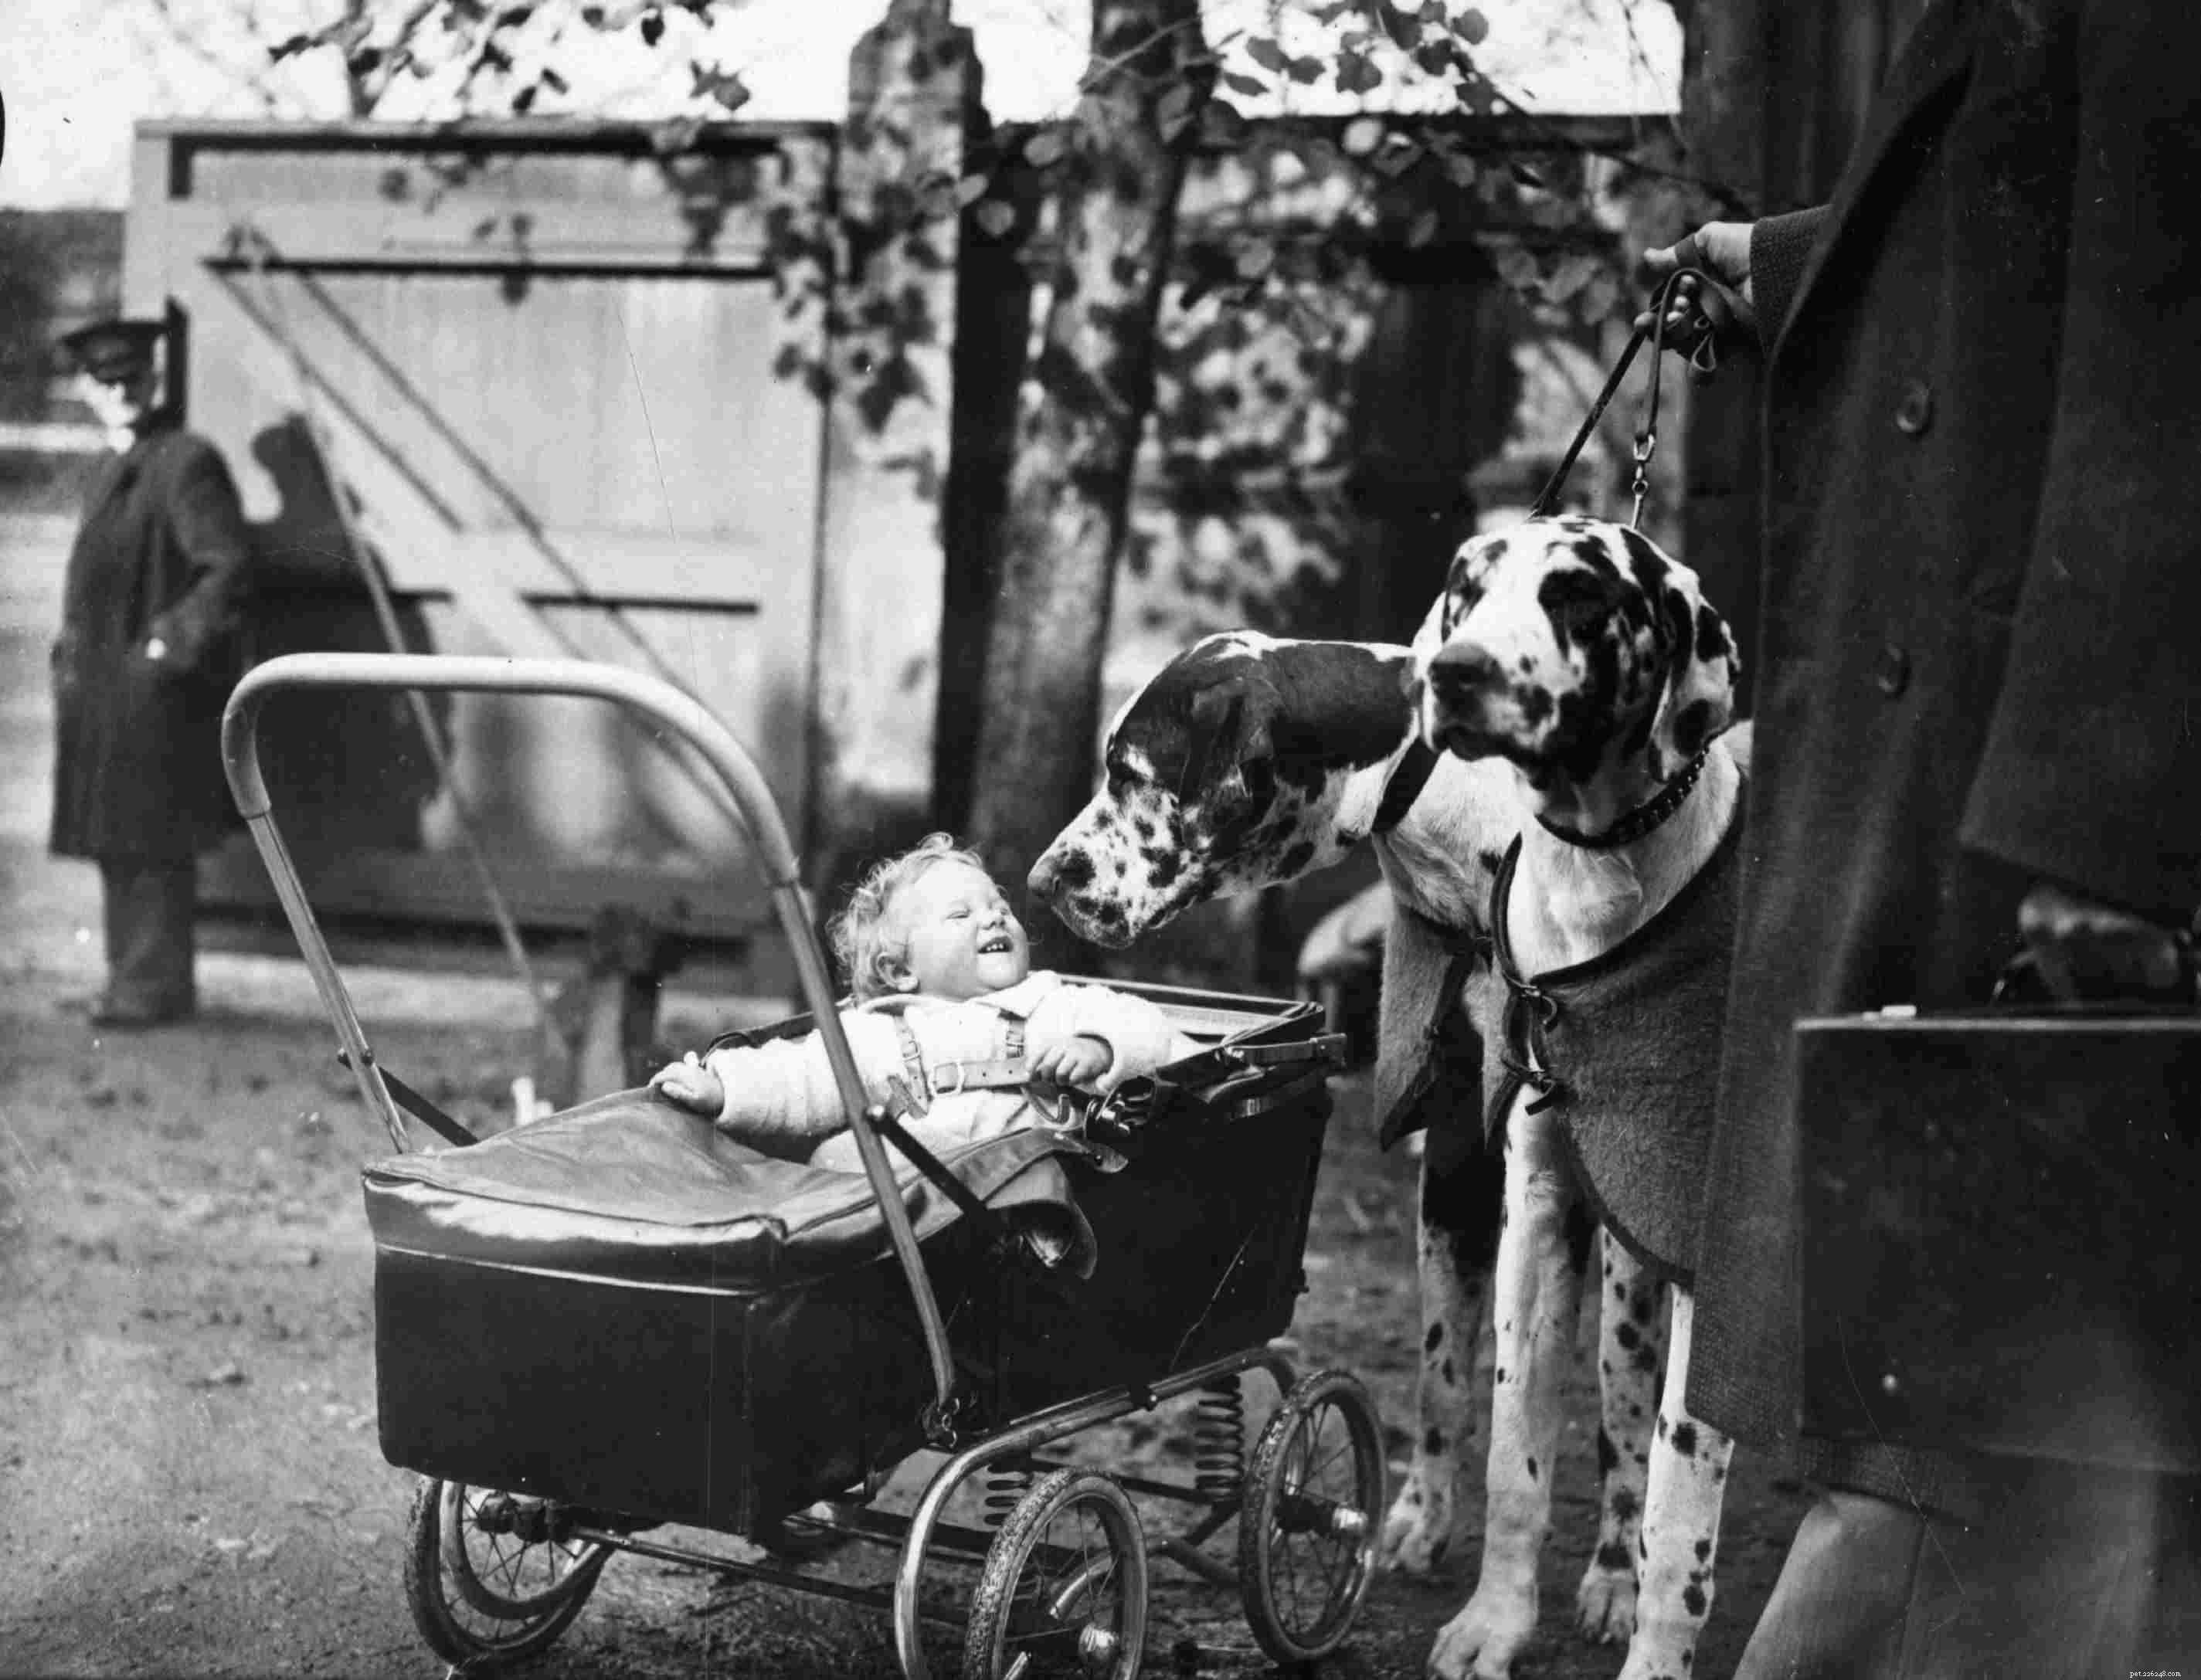 Dogue allemand :caractéristiques et soins des races de chiens